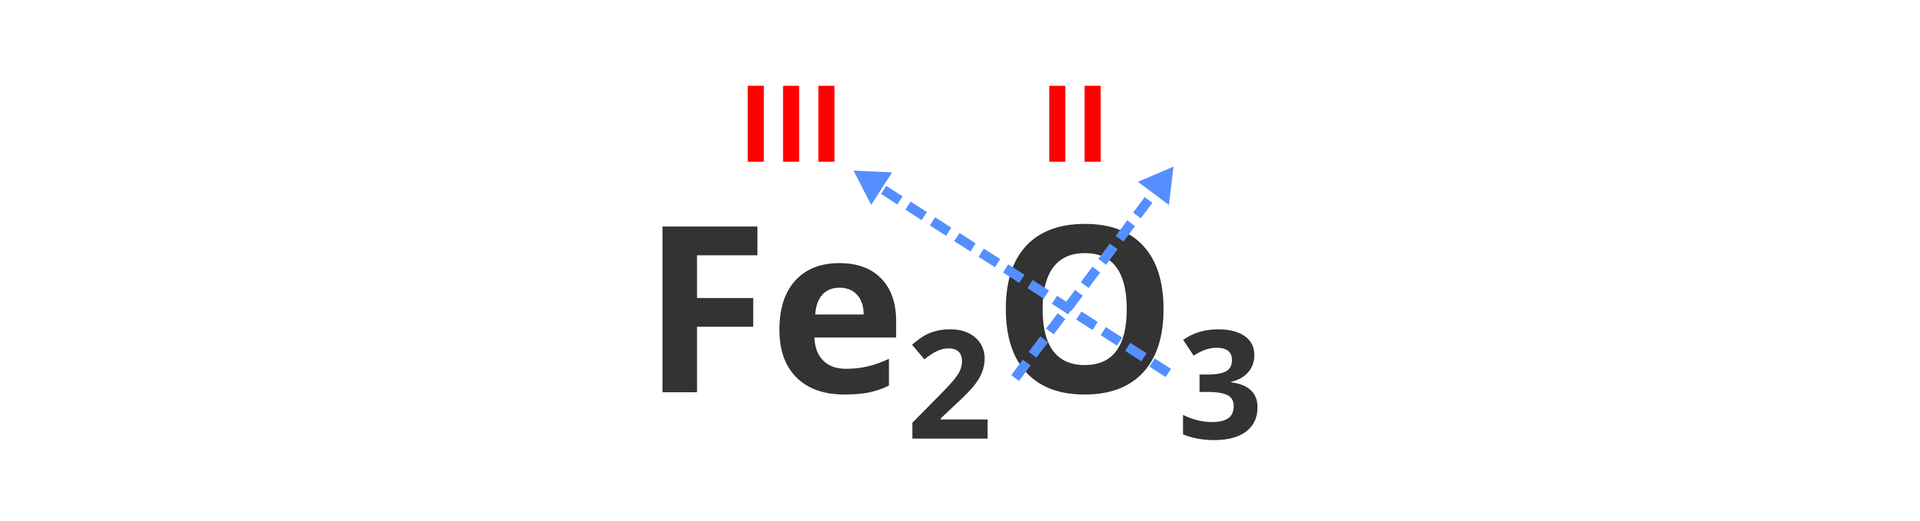 Na ilustracji znajduje się zapisana sumarycznie cząsteczka tlenku żelaza o wzorze Fe2O3. Współczynniki stechiometryczne przenoszone są na krzyż w górę nad symbole sąsiadujących pierwiastków, co ilustrują niebieskie ukośne strzałki. Nad symbolami żelaza i tlenu widoczne są zapisane czerwonymi rzymskimi liczbami wartościowości wynoszące kolejno trzy i dwa.